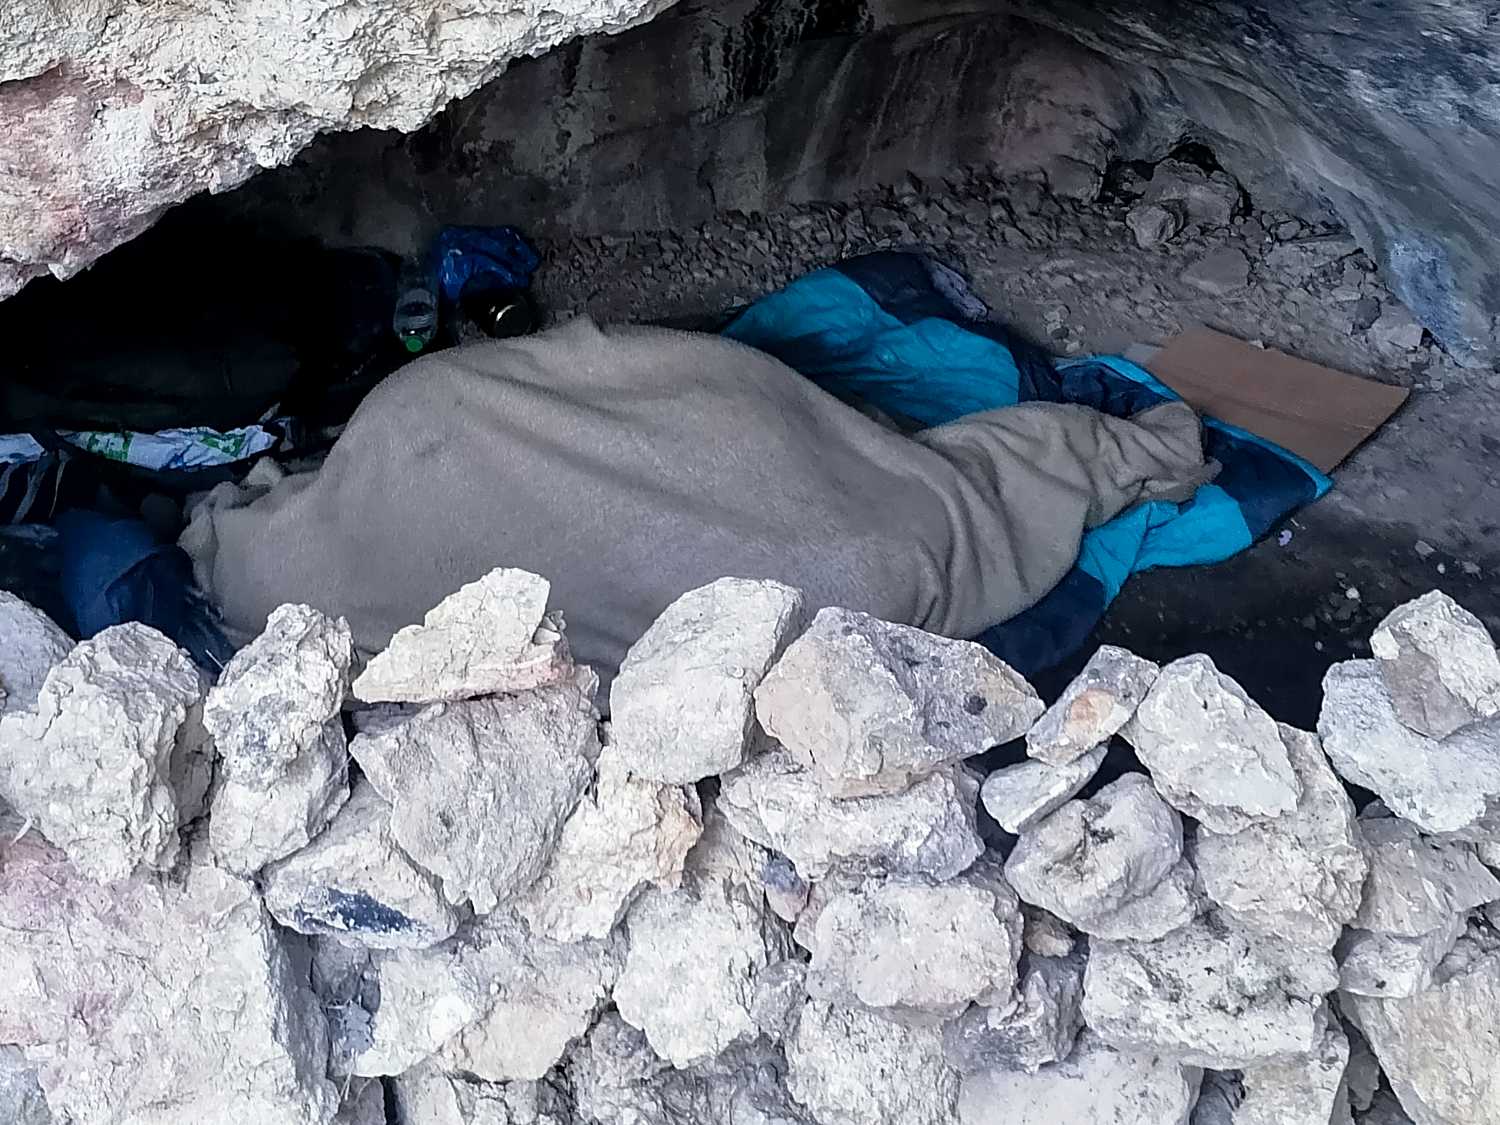 Λόφος Φιλοπάππου: Άστεγος έχει βρει καταφύγιο σε σπηλιά